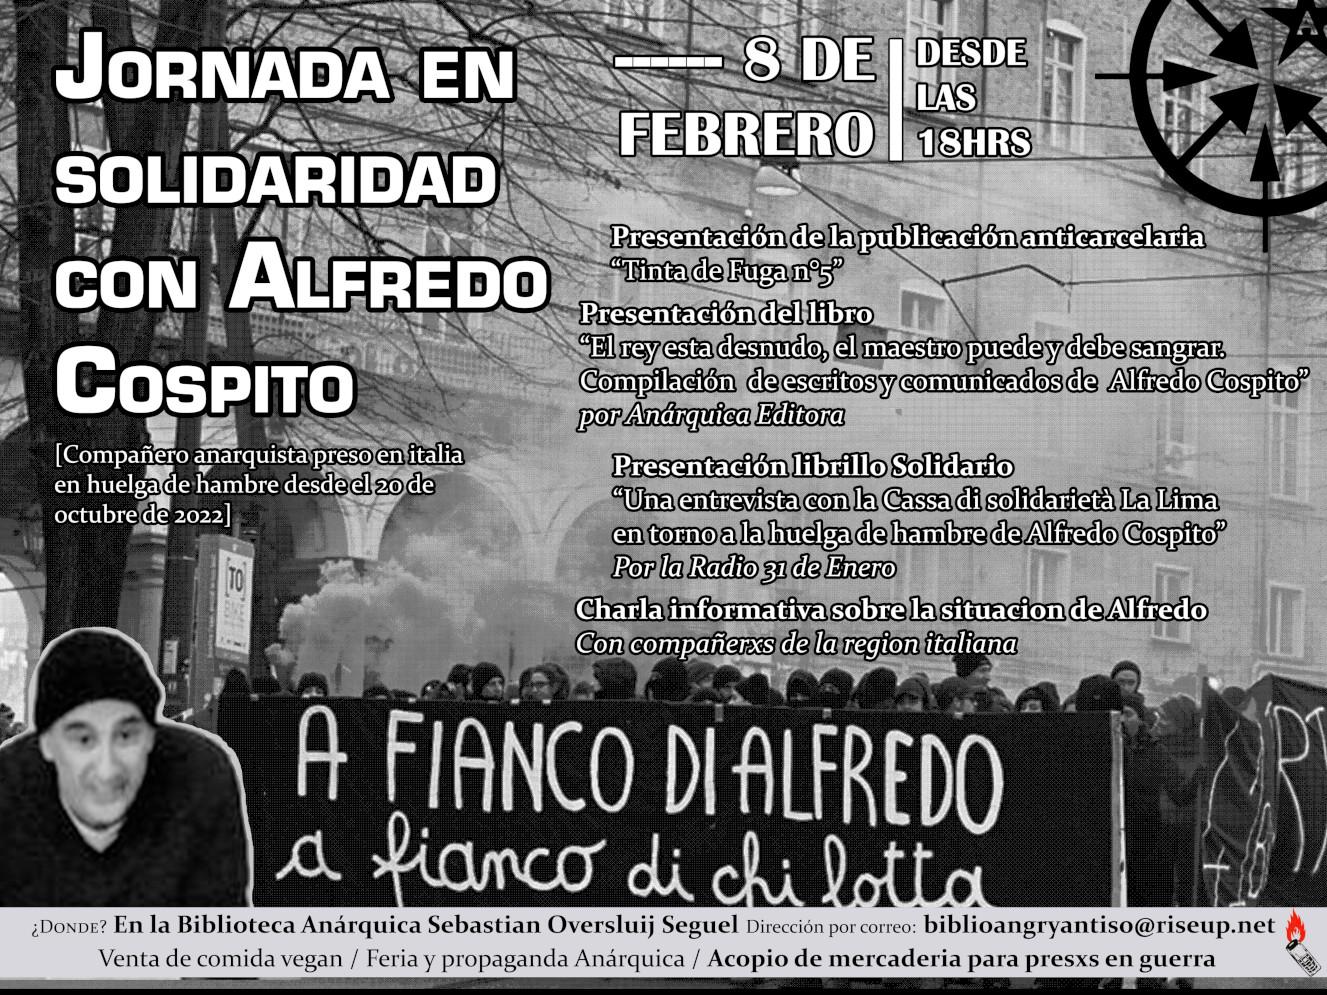 Chile: Jornada en solidaridad con Alfredo Cospito – 8 de febrero / 18hrs